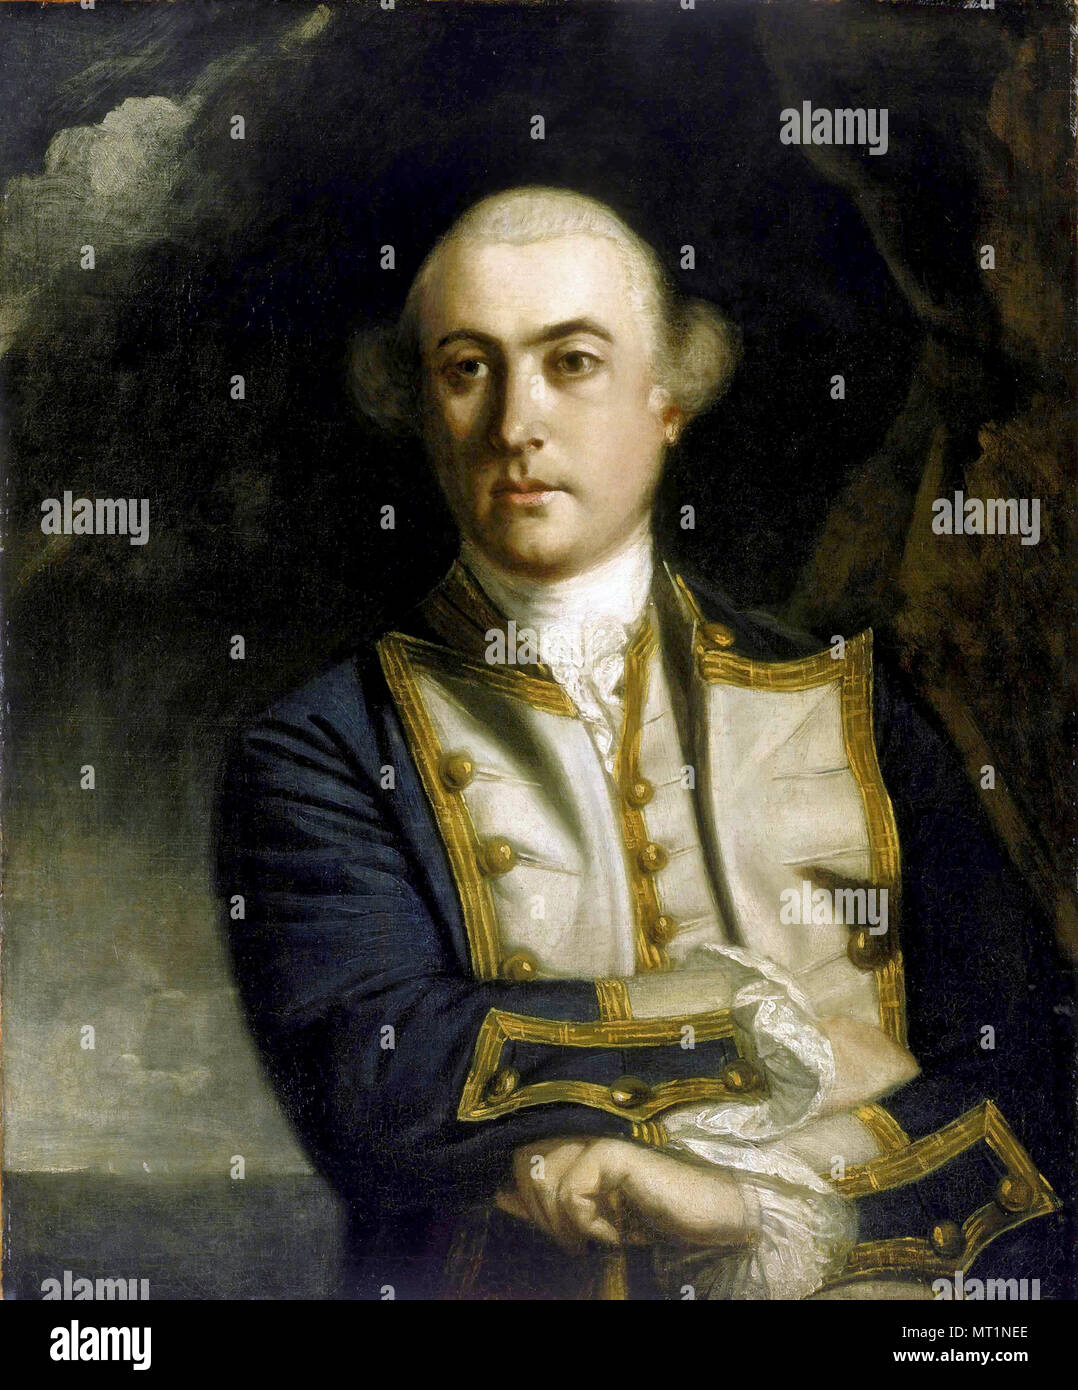 Vize-admiral John Byron, John Byron (1723 - 1786) die britische Royal Navy Offizier und Politiker Stockfoto